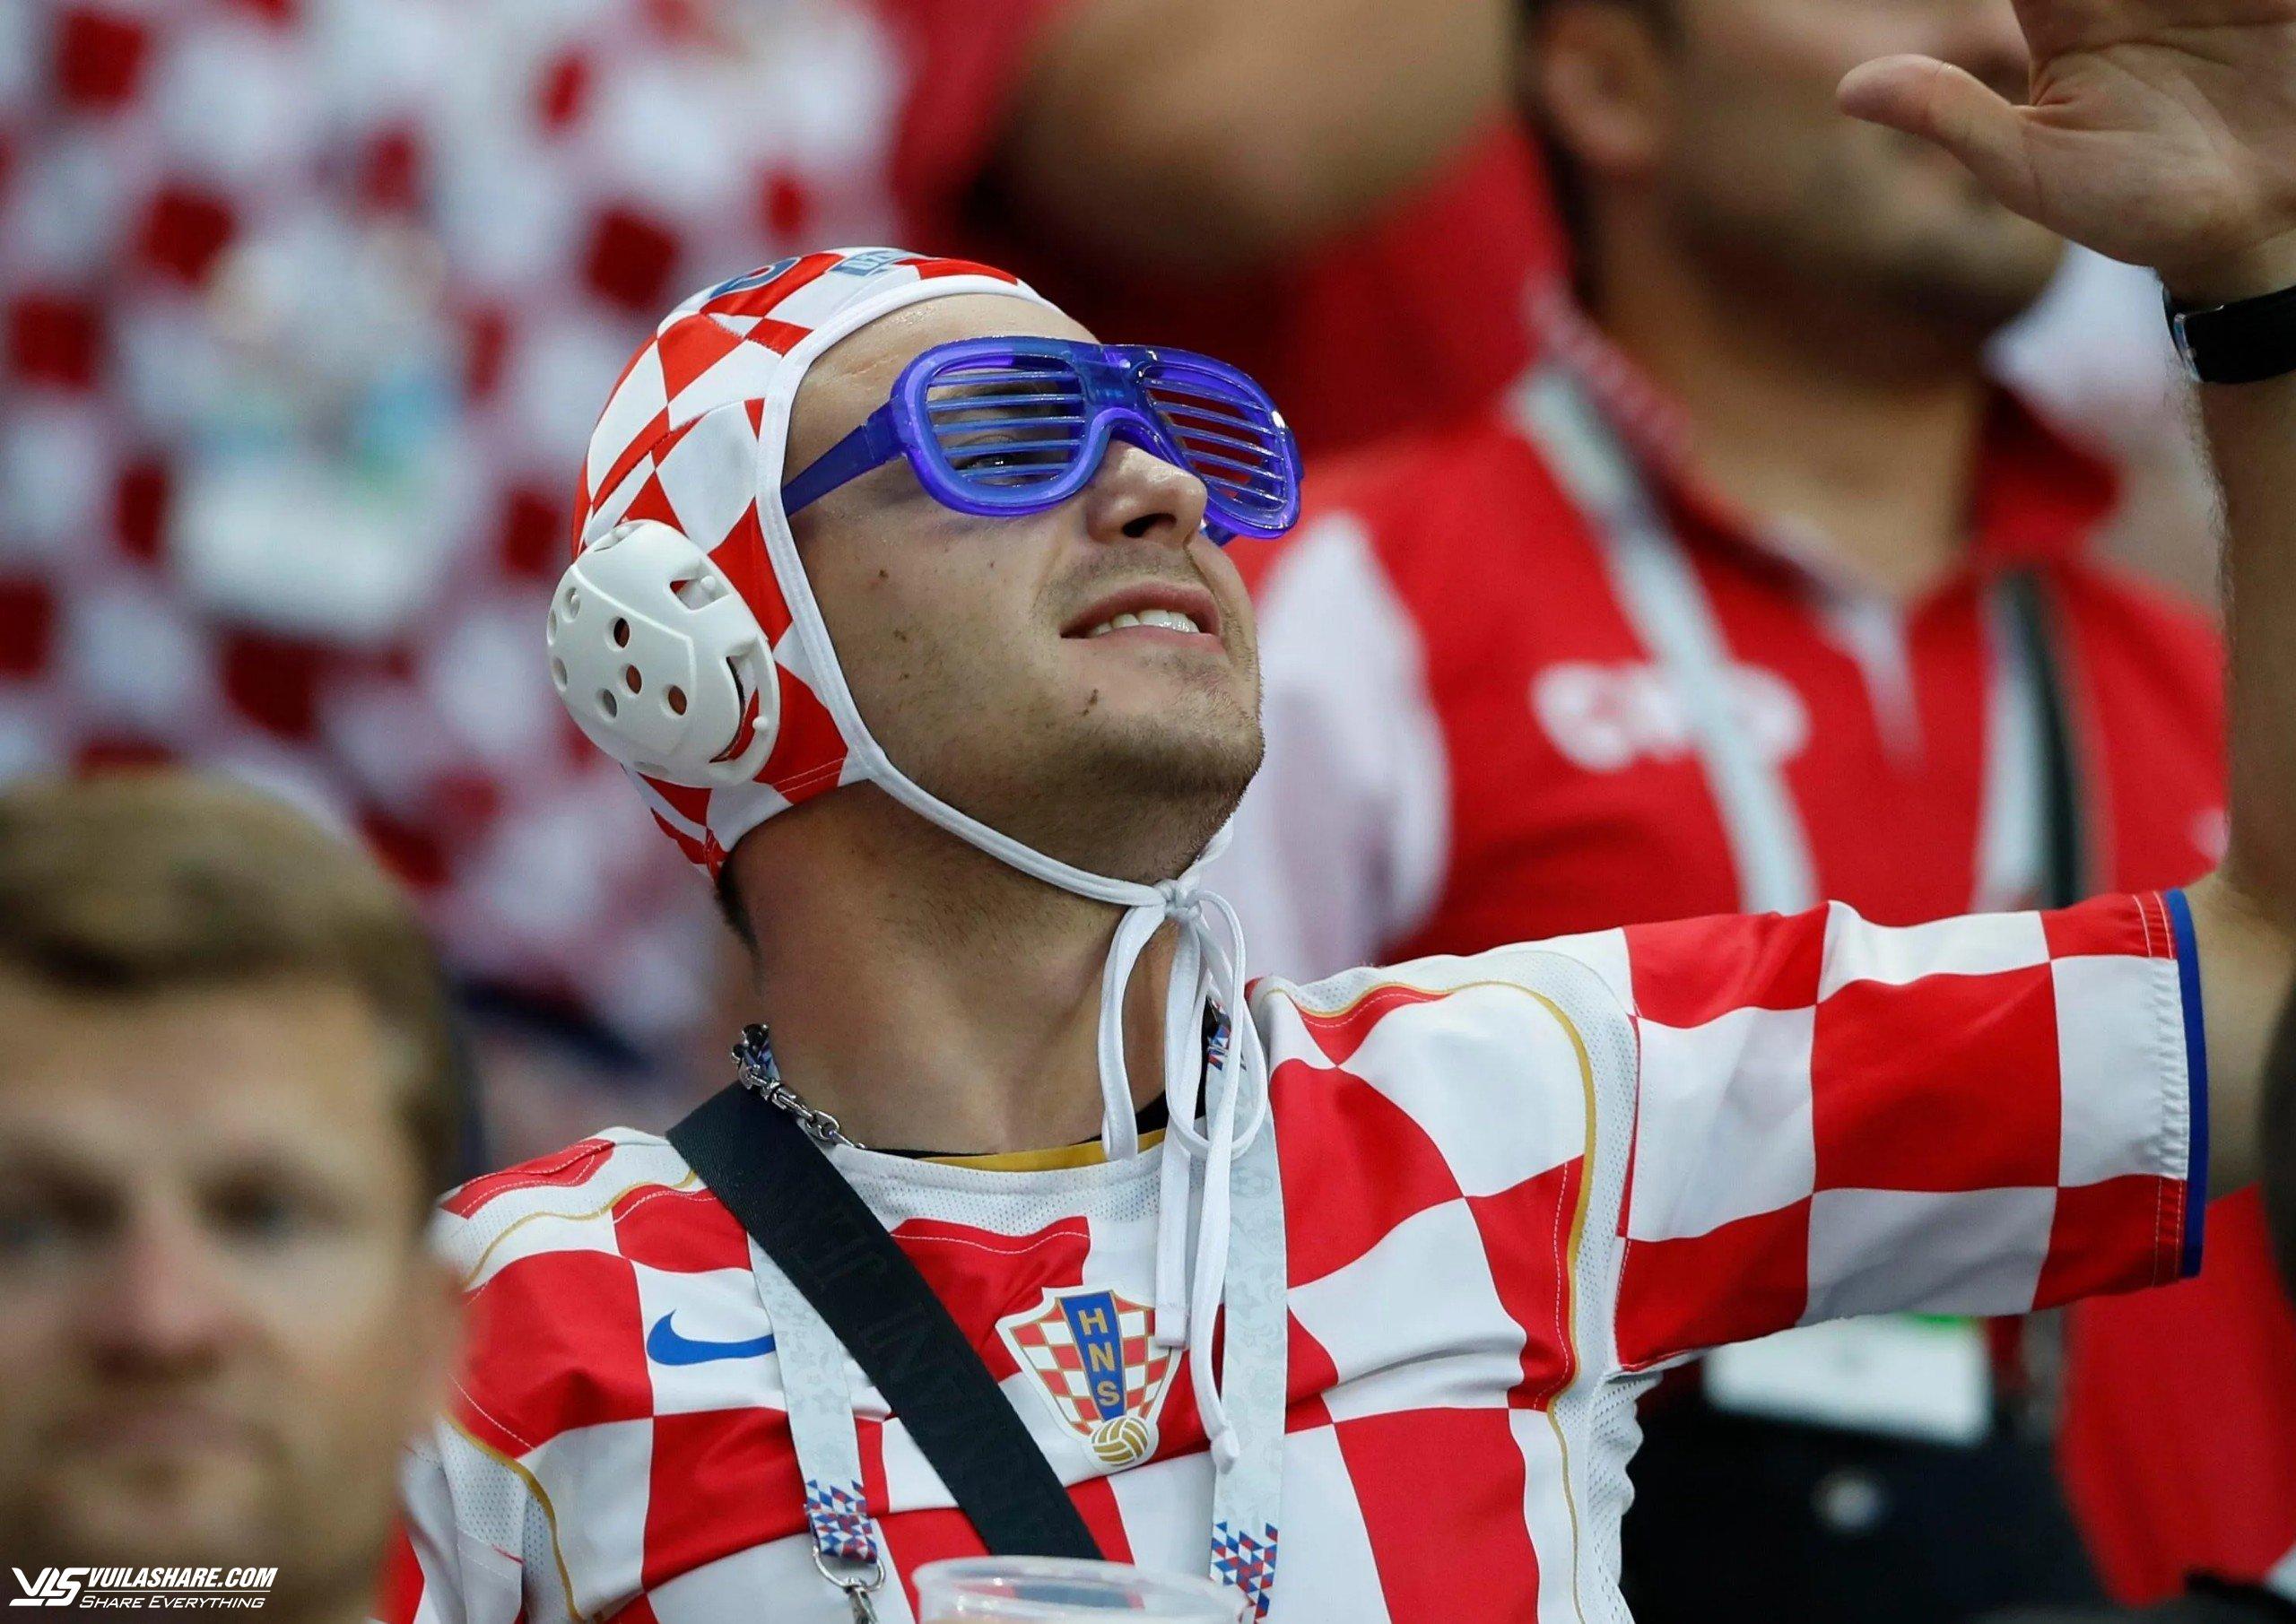 CĐV Croatia luôn mang mũ độc lạ khi cổ vũ: Thì ra ý nghĩa đến vậy!- Ảnh 1.